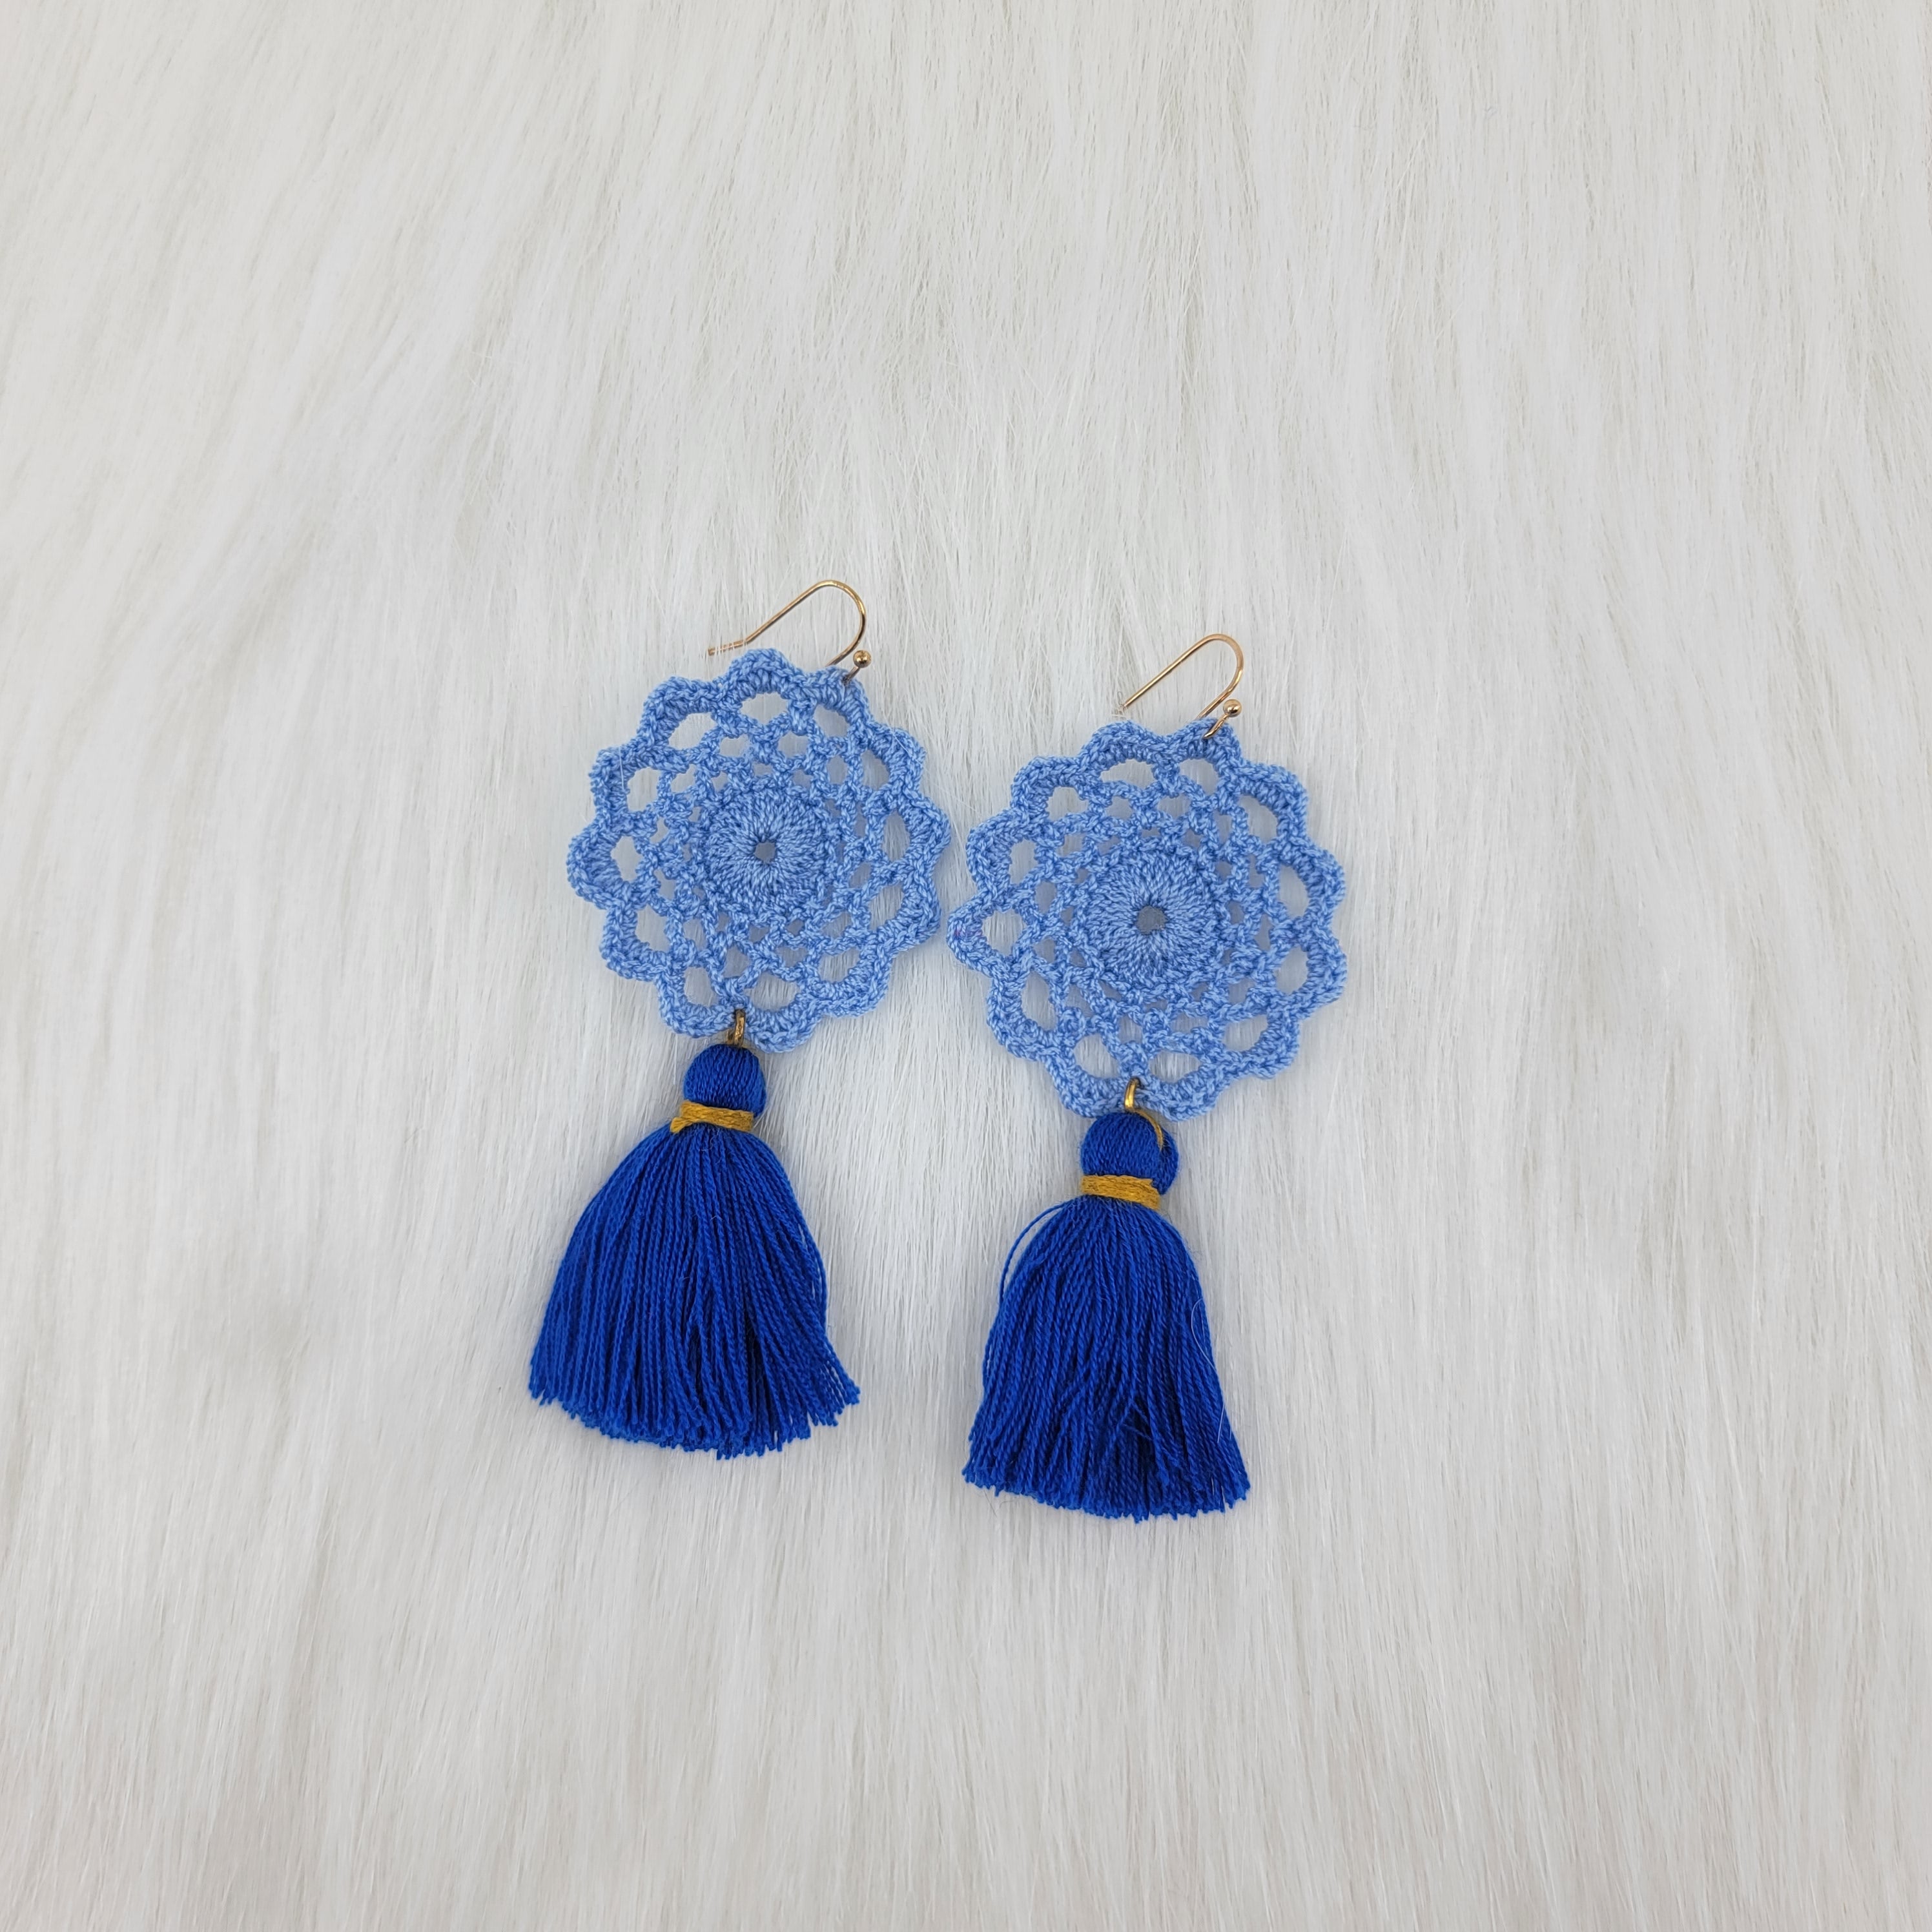 Blue Flower Crochet Earrings With Tassels